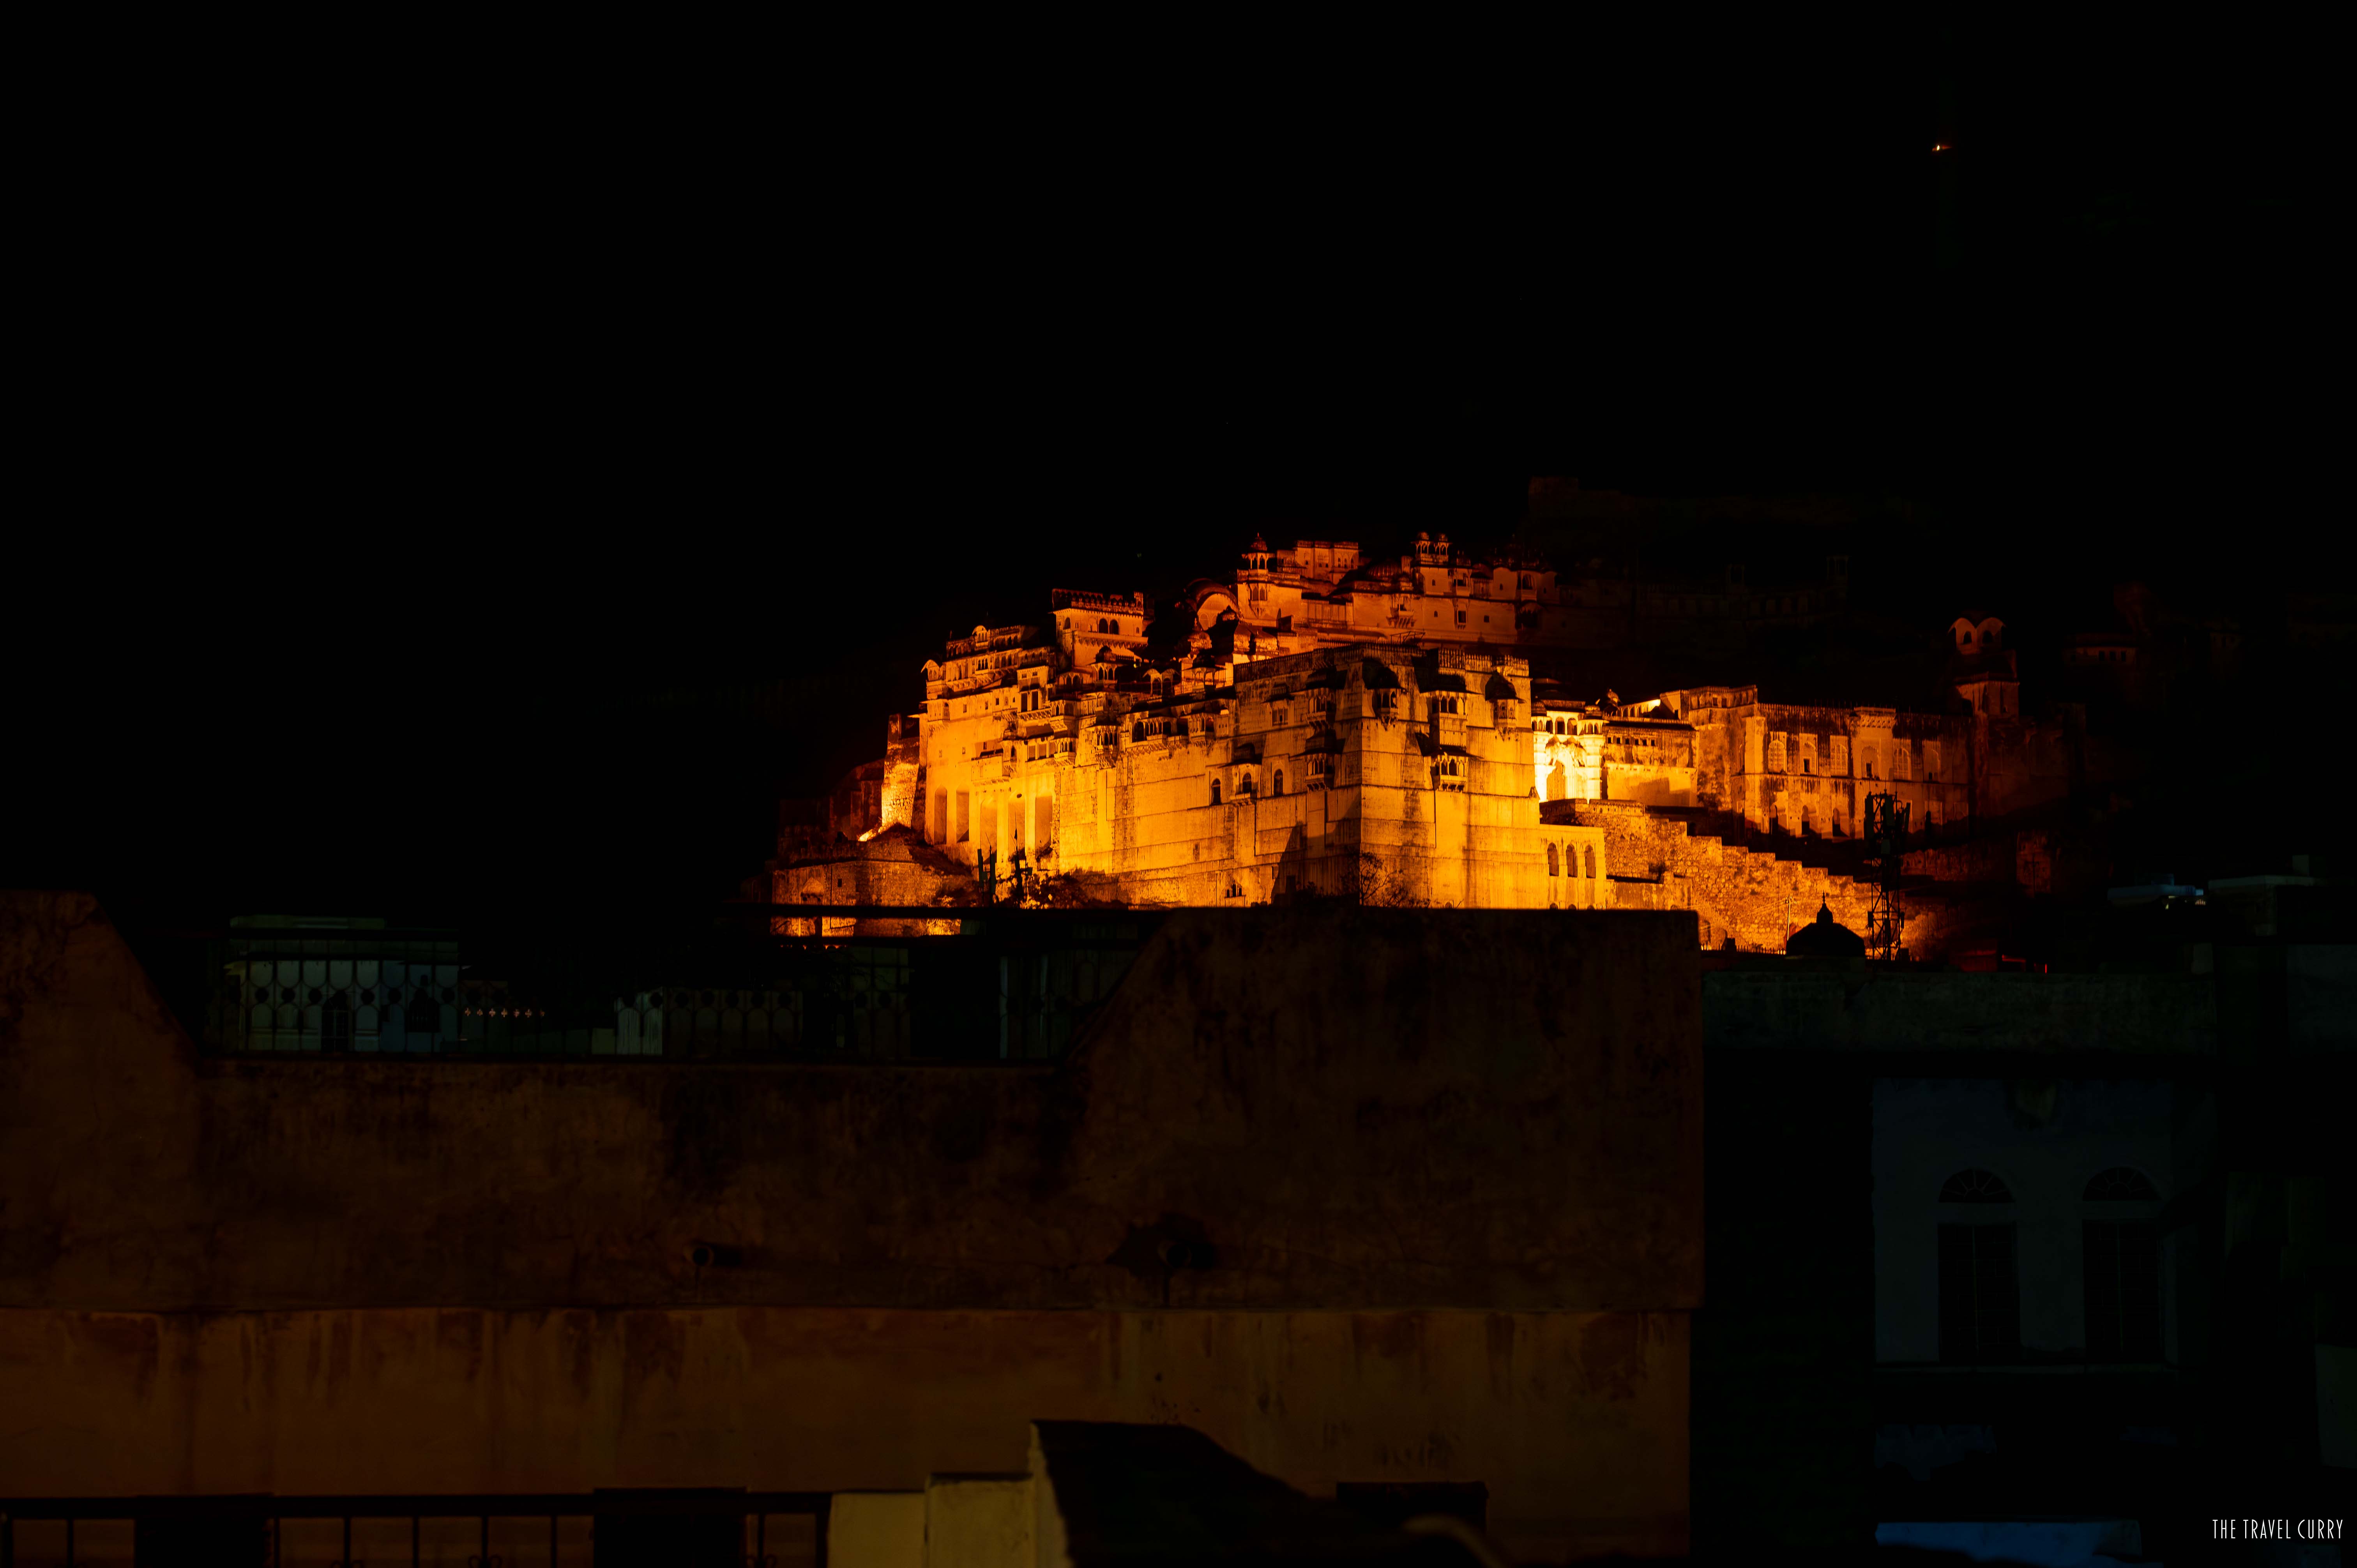 Bundi fort at night